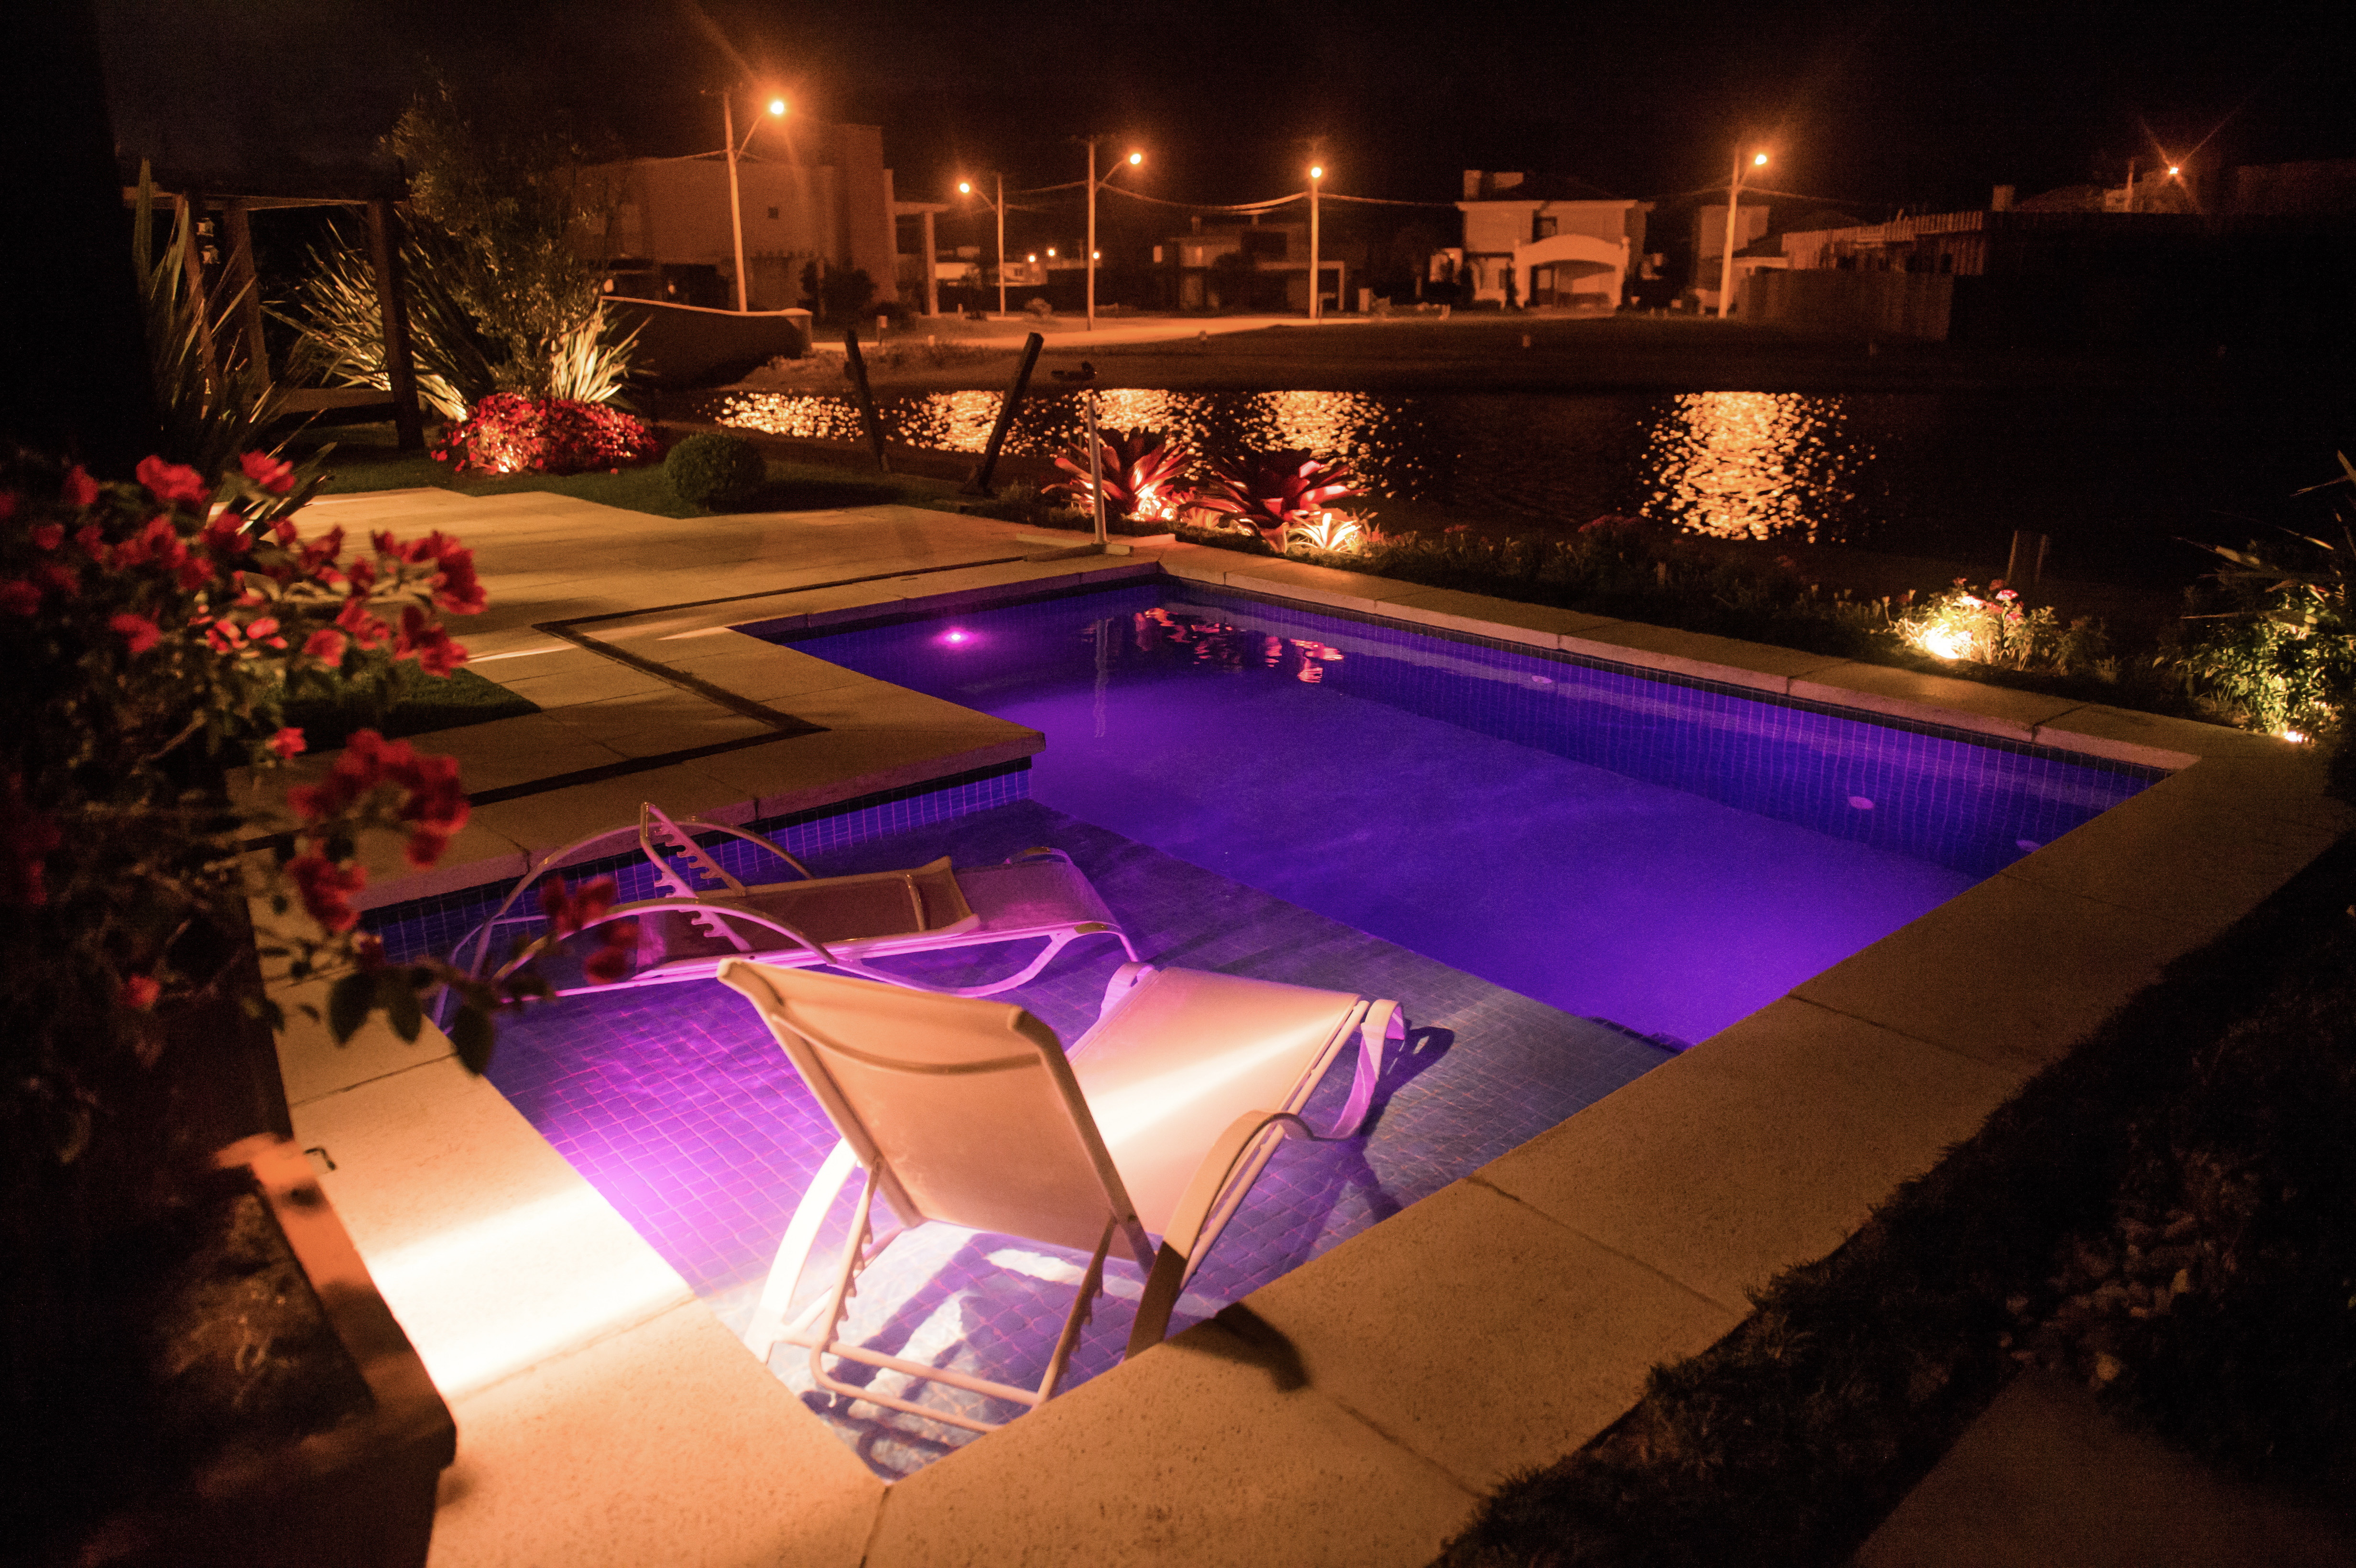 A imagem representa a luminação para piscinas em um abiente relaxante e convidativo